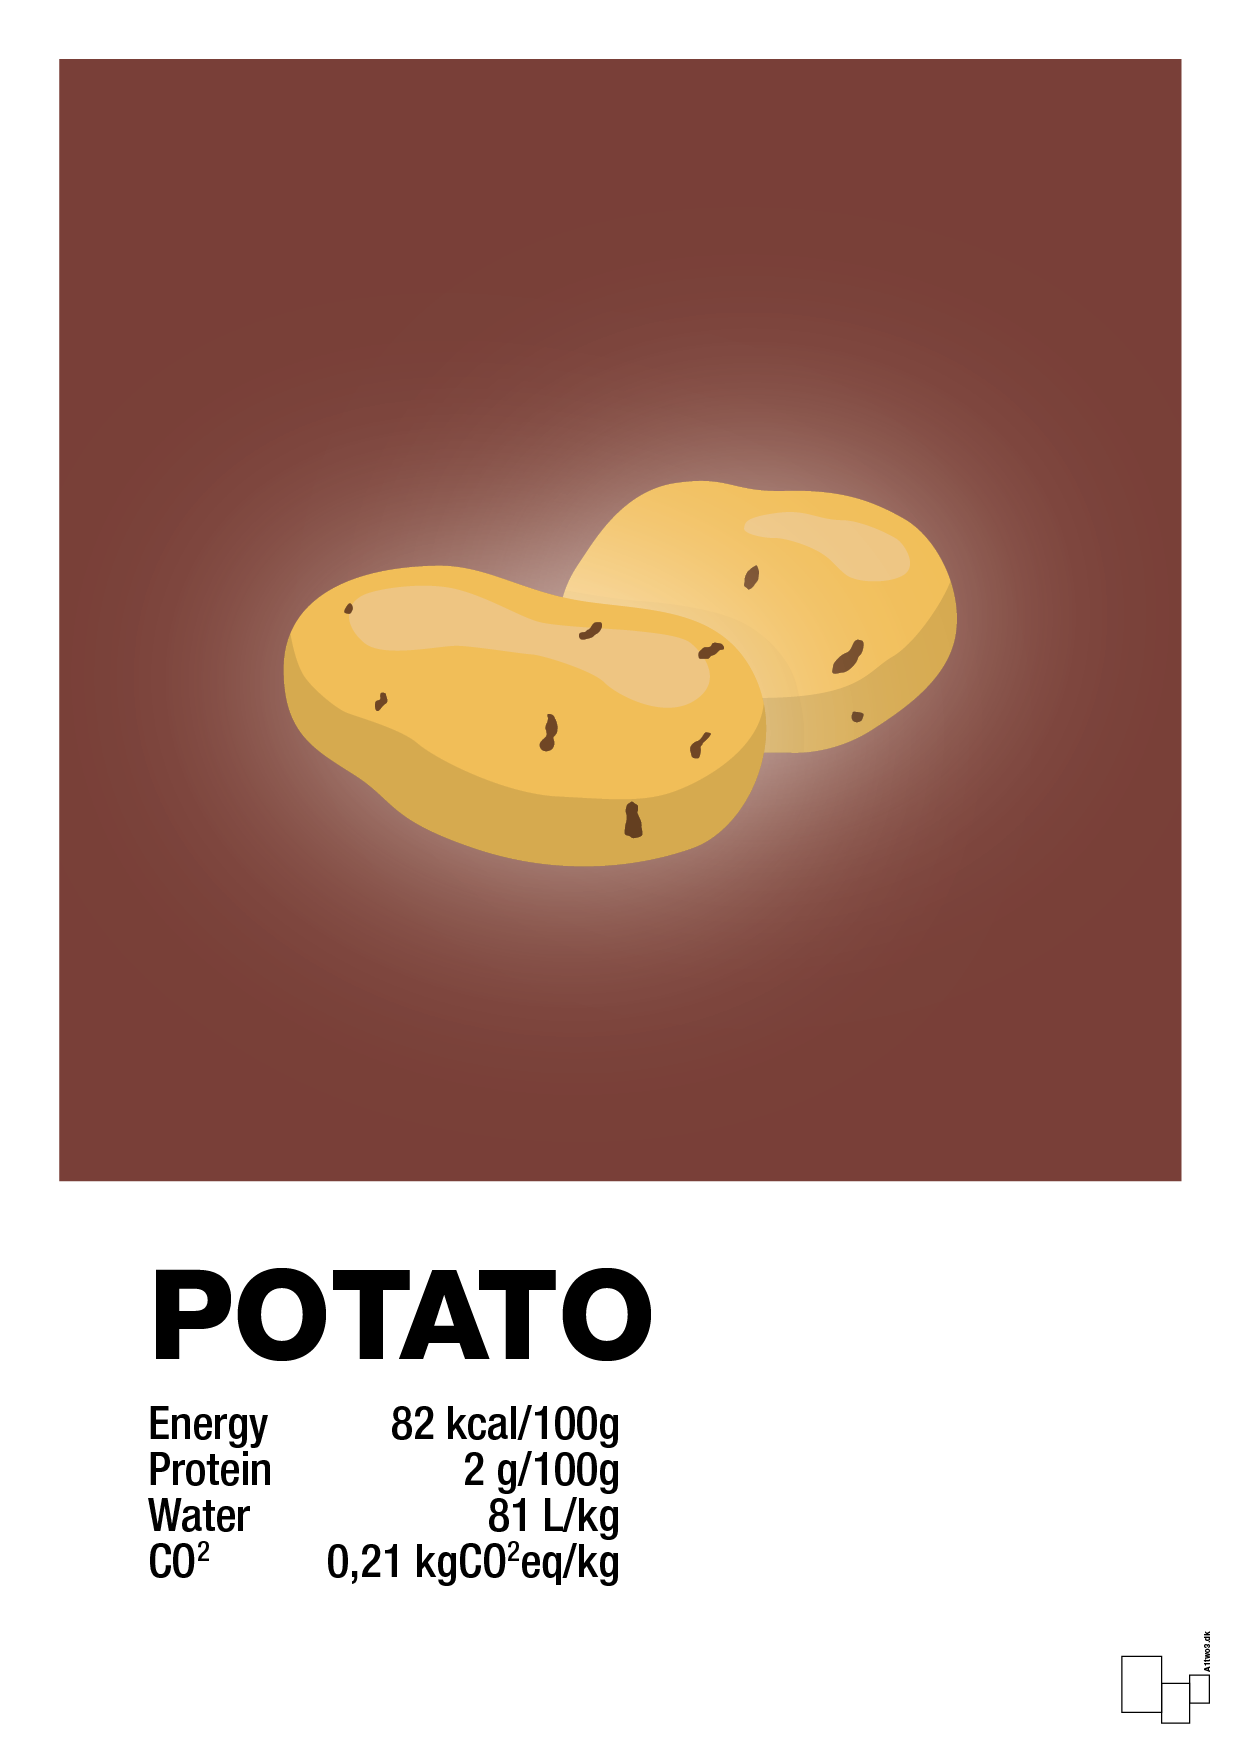 potato nutrition og miljø - Plakat med Mad & Drikke i Red Pepper